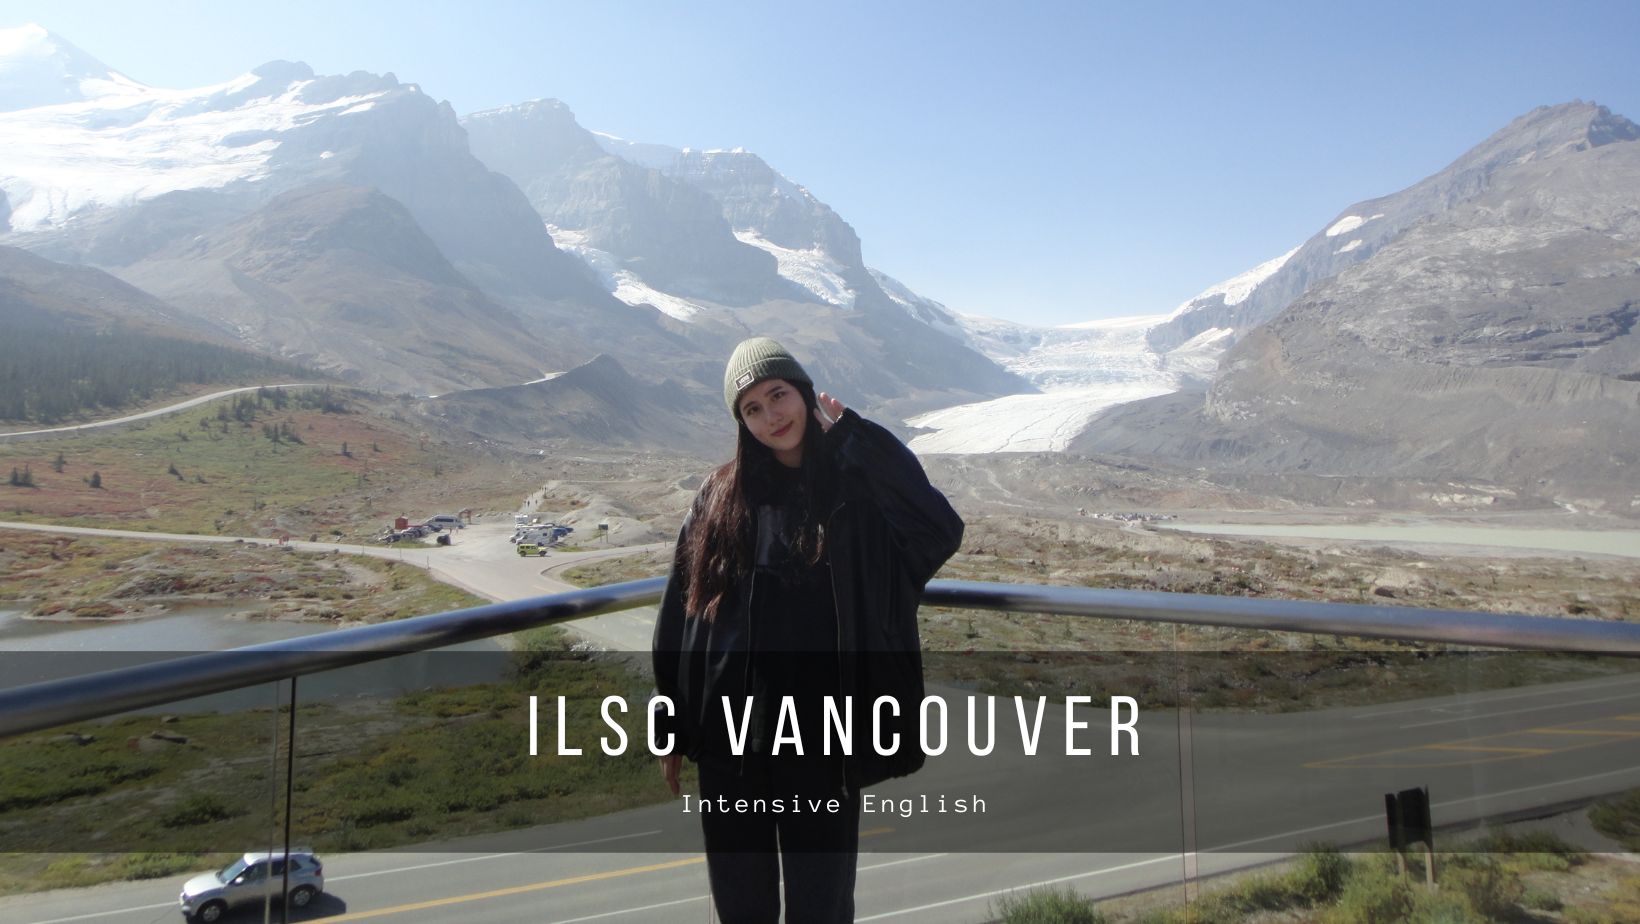 【加拿大遊學】芷萱的溫哥華遊學心得 - ILSC Vanco